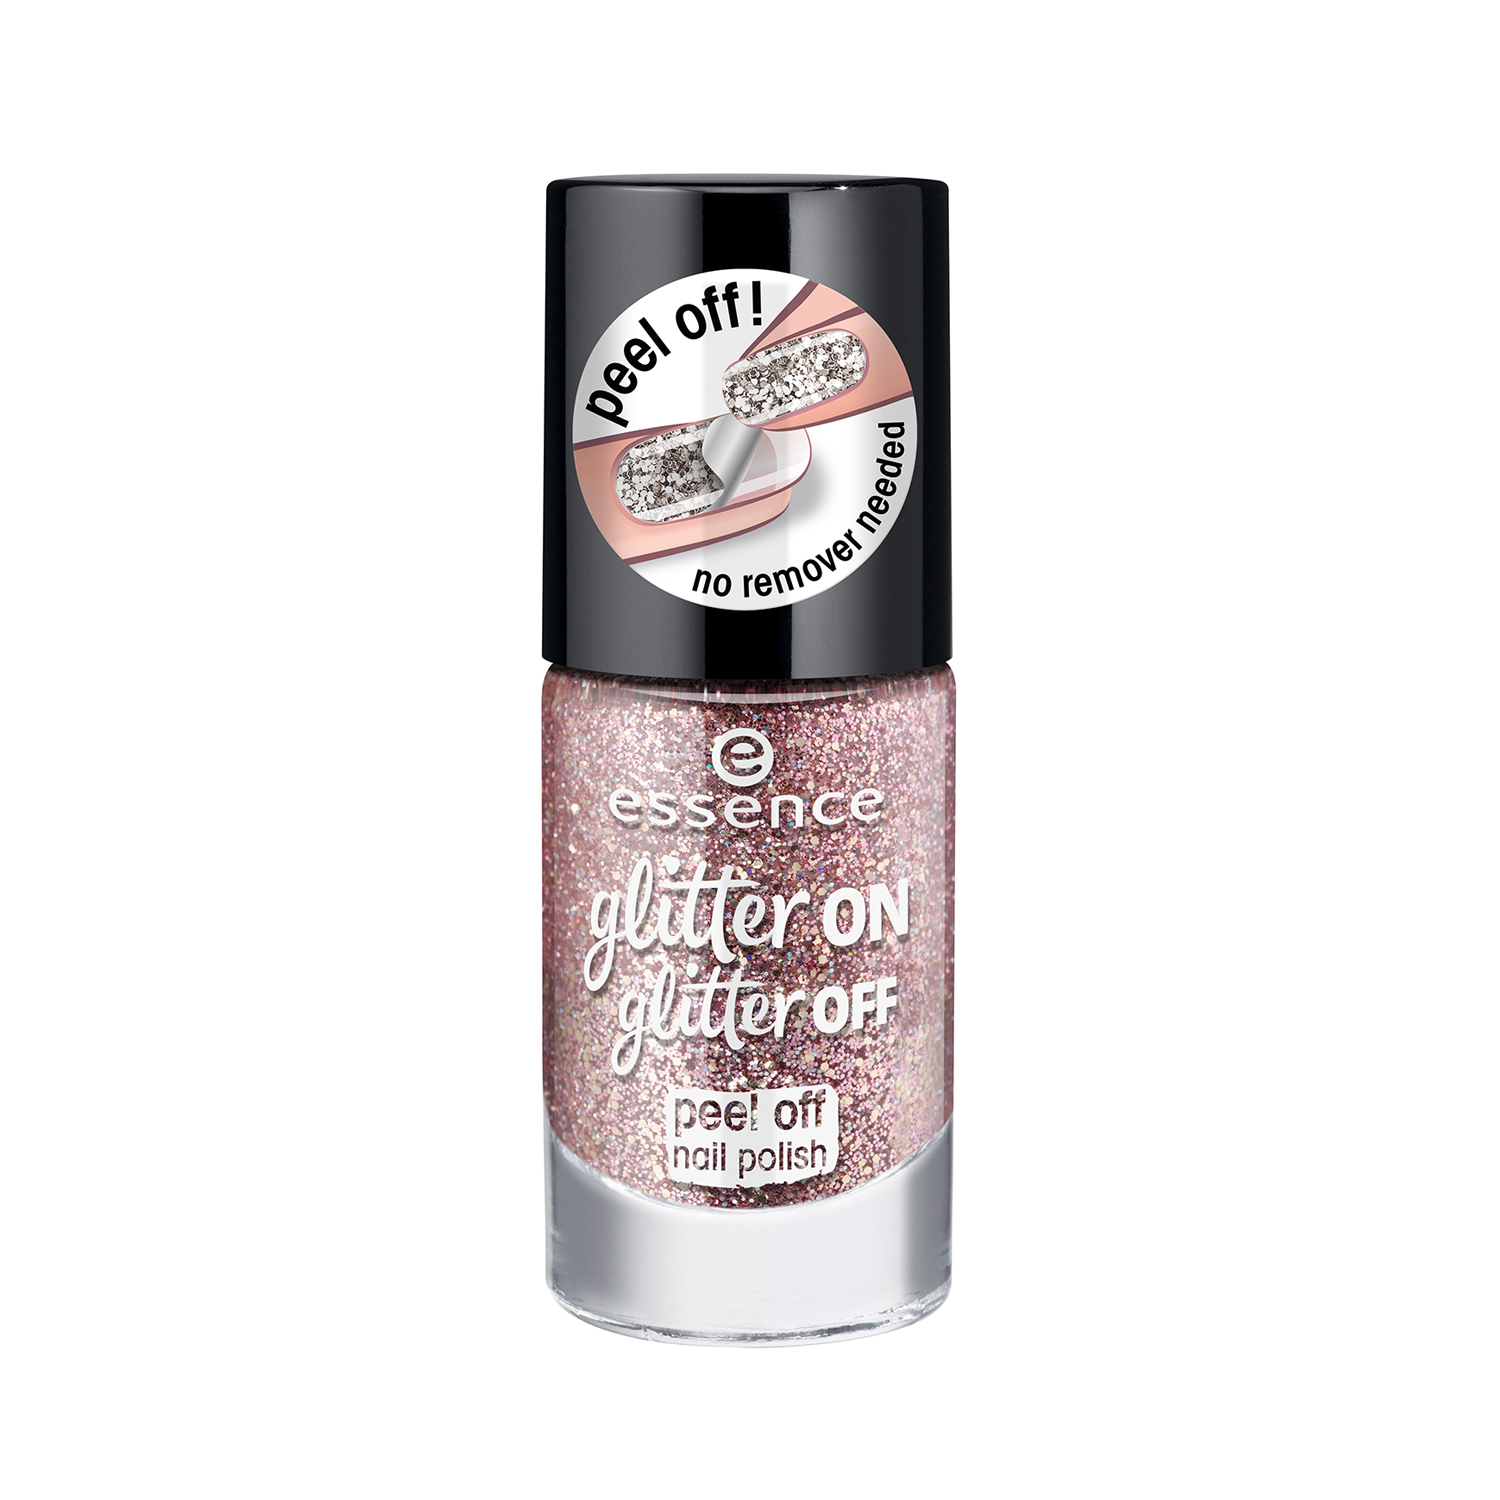 essence glitter on glitter off peel off nail polish 02